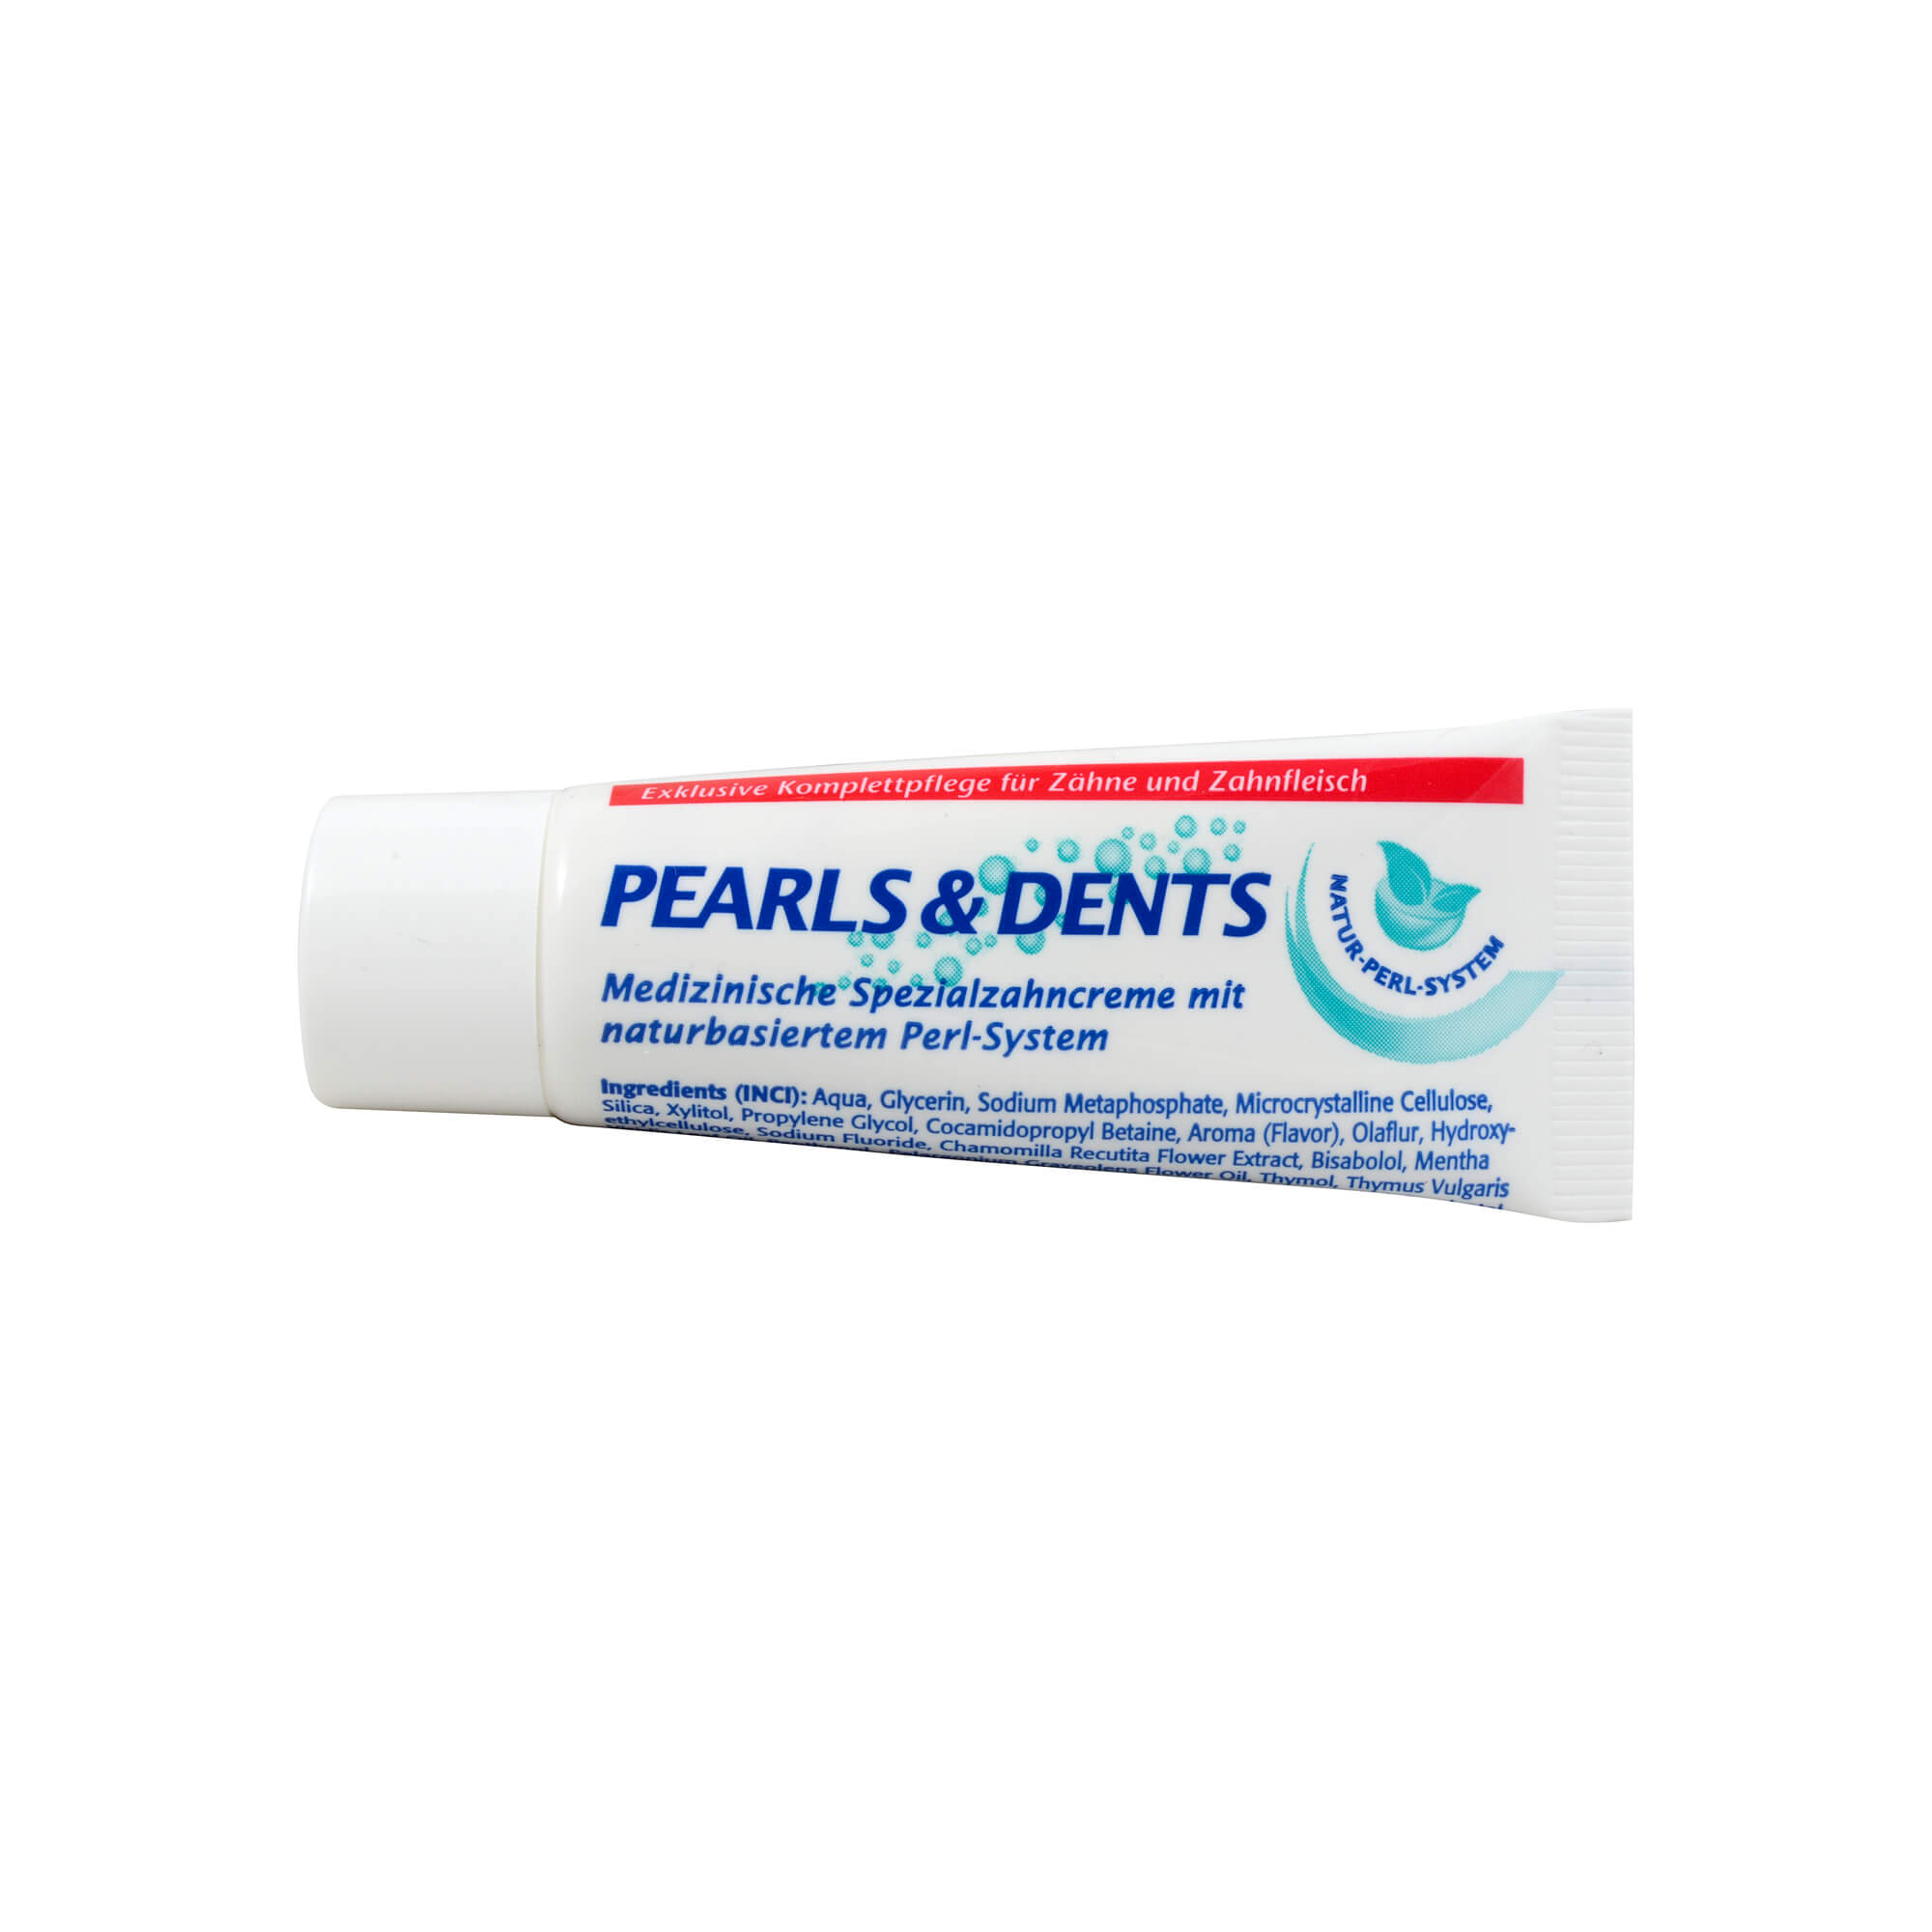 Medizinische Mundpflege mit natürlichem Perl-System. Für Zähne und Zahnfleisch.